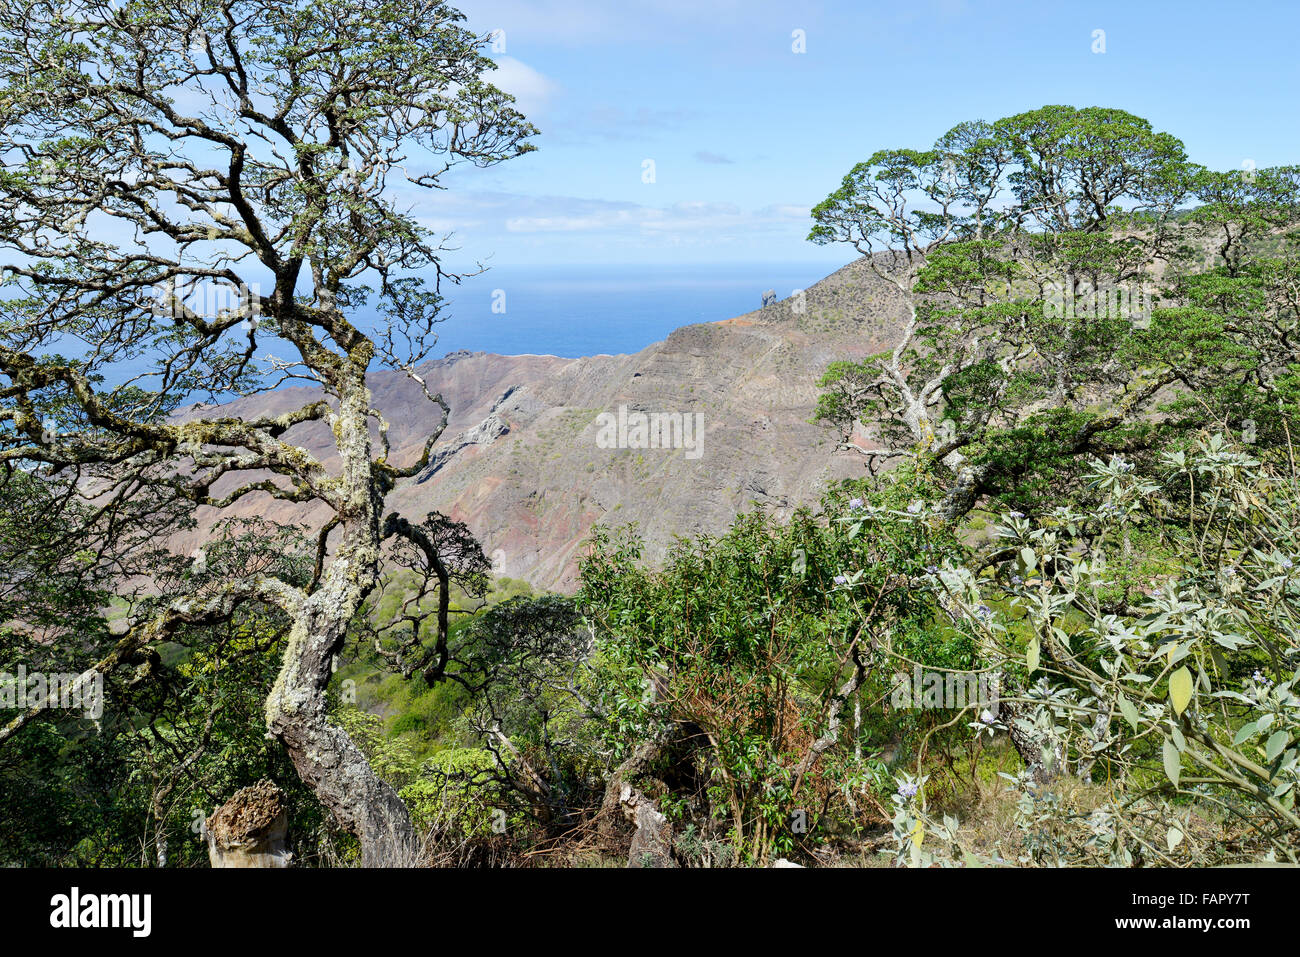 Gumwood arbres endémiques de l'île de Sainte-Hélène dans l'Atlantique Sud Banque D'Images